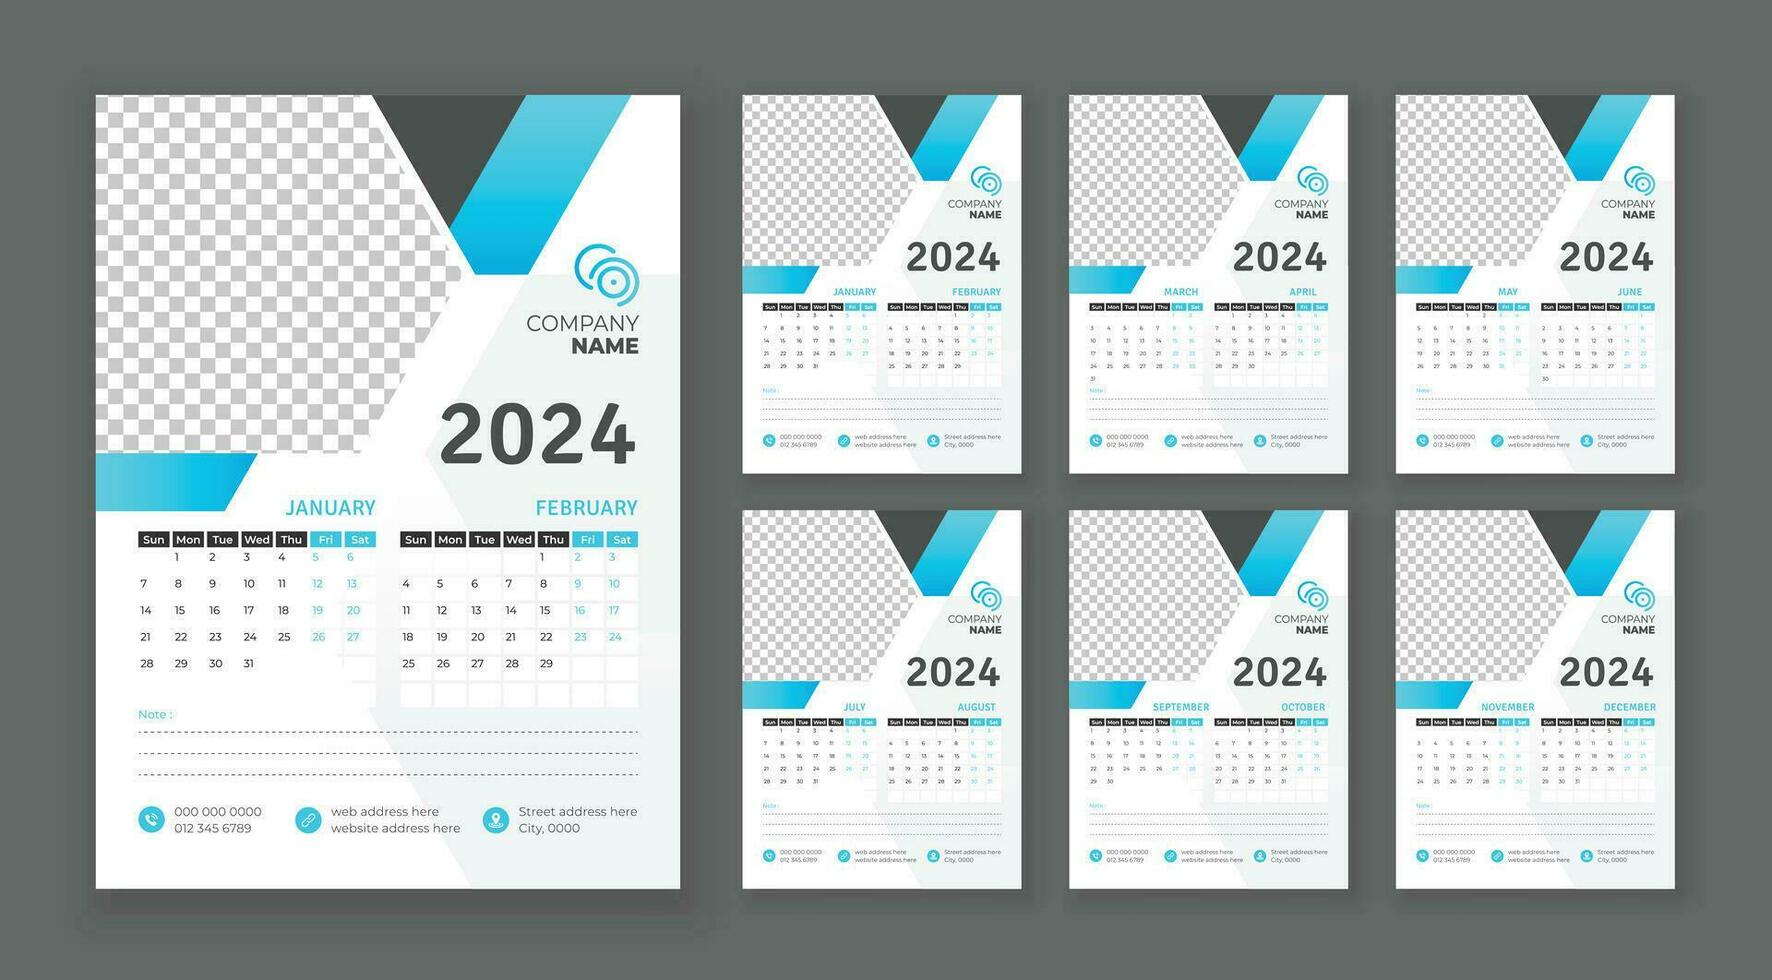 pared calendario 2024, vector pared calendario 2024, corporativo y negocio planificador modelo en inglés, semana comienzo domingo, pared calendario en un minimalista estilo